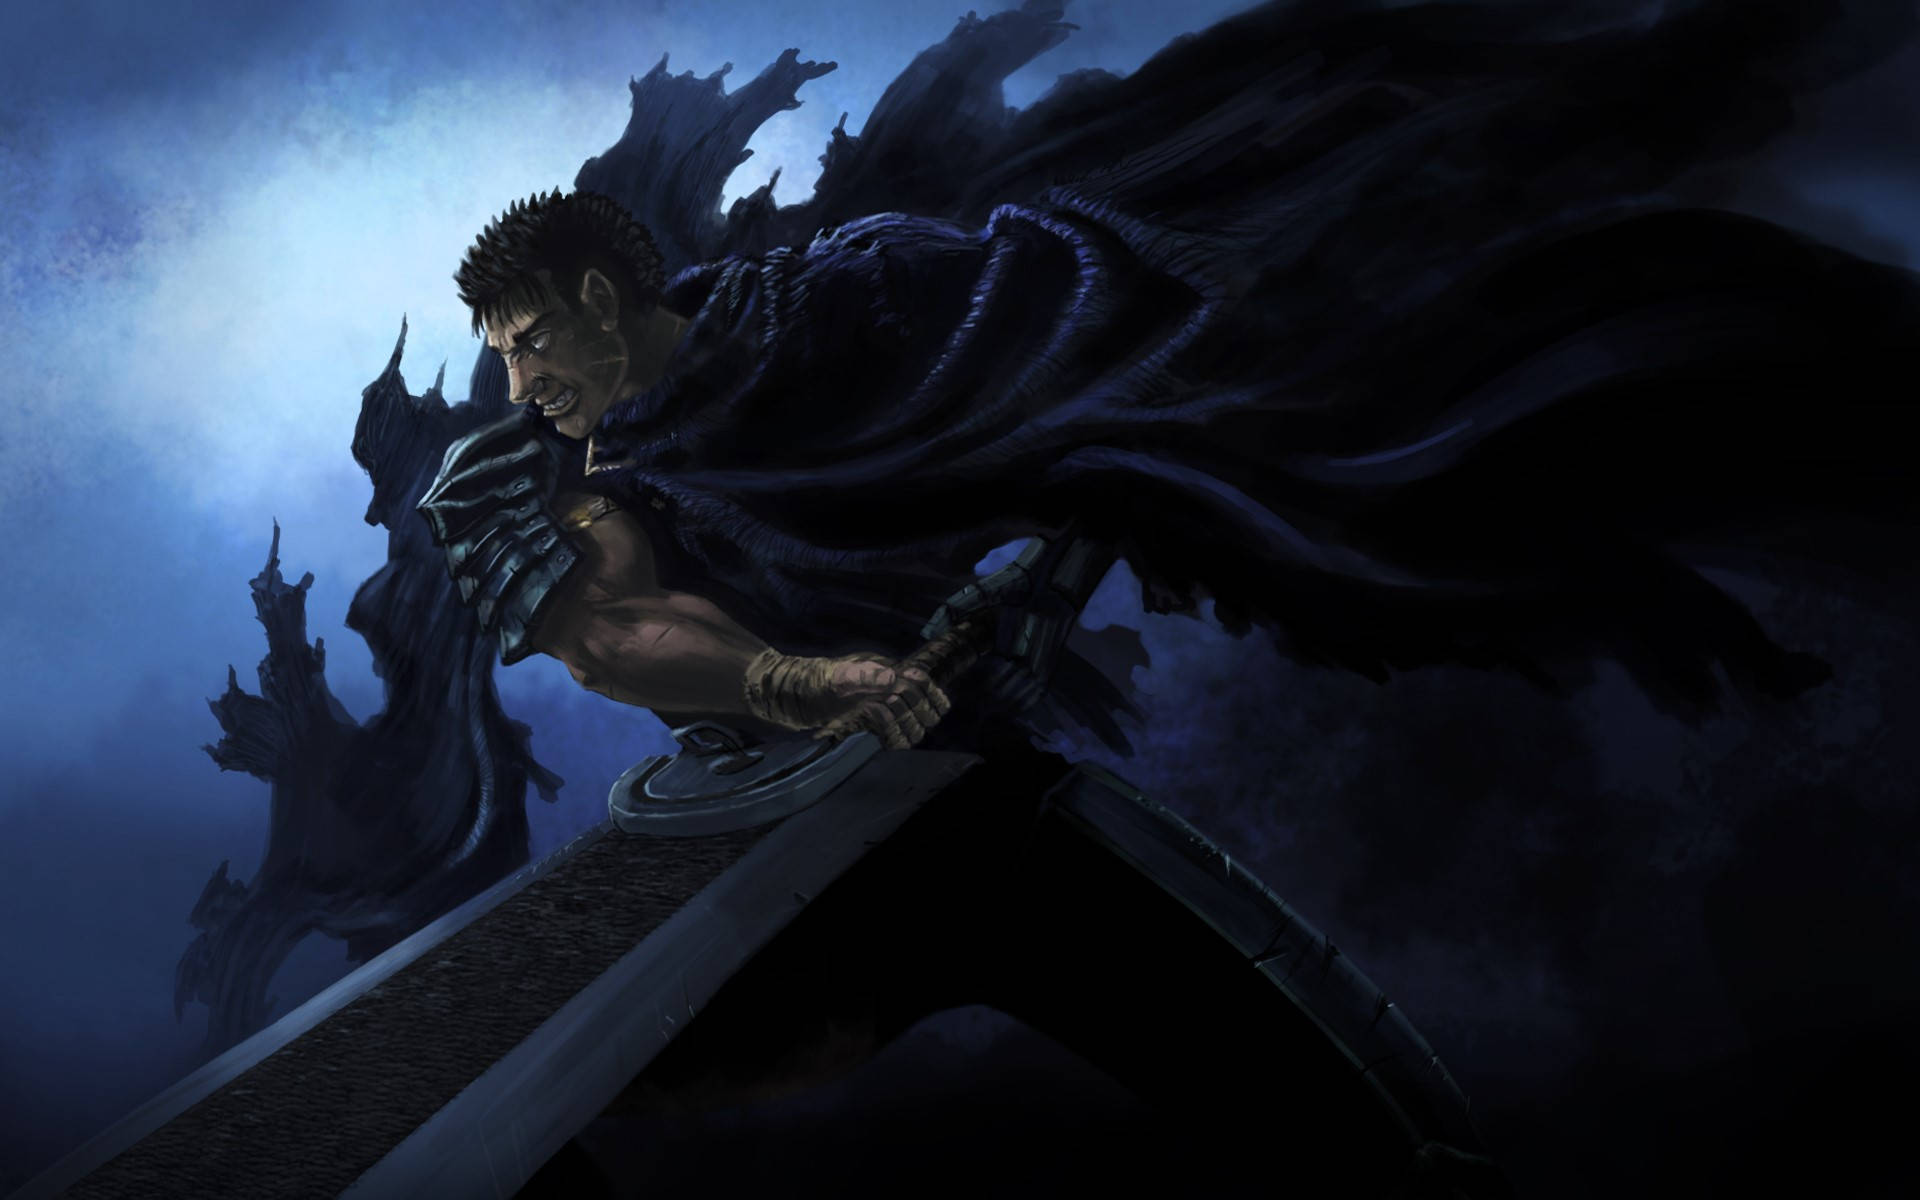 Guts, den sorte sværdsmand fra Berserk, væbnede med sin massive sværd. Wallpaper